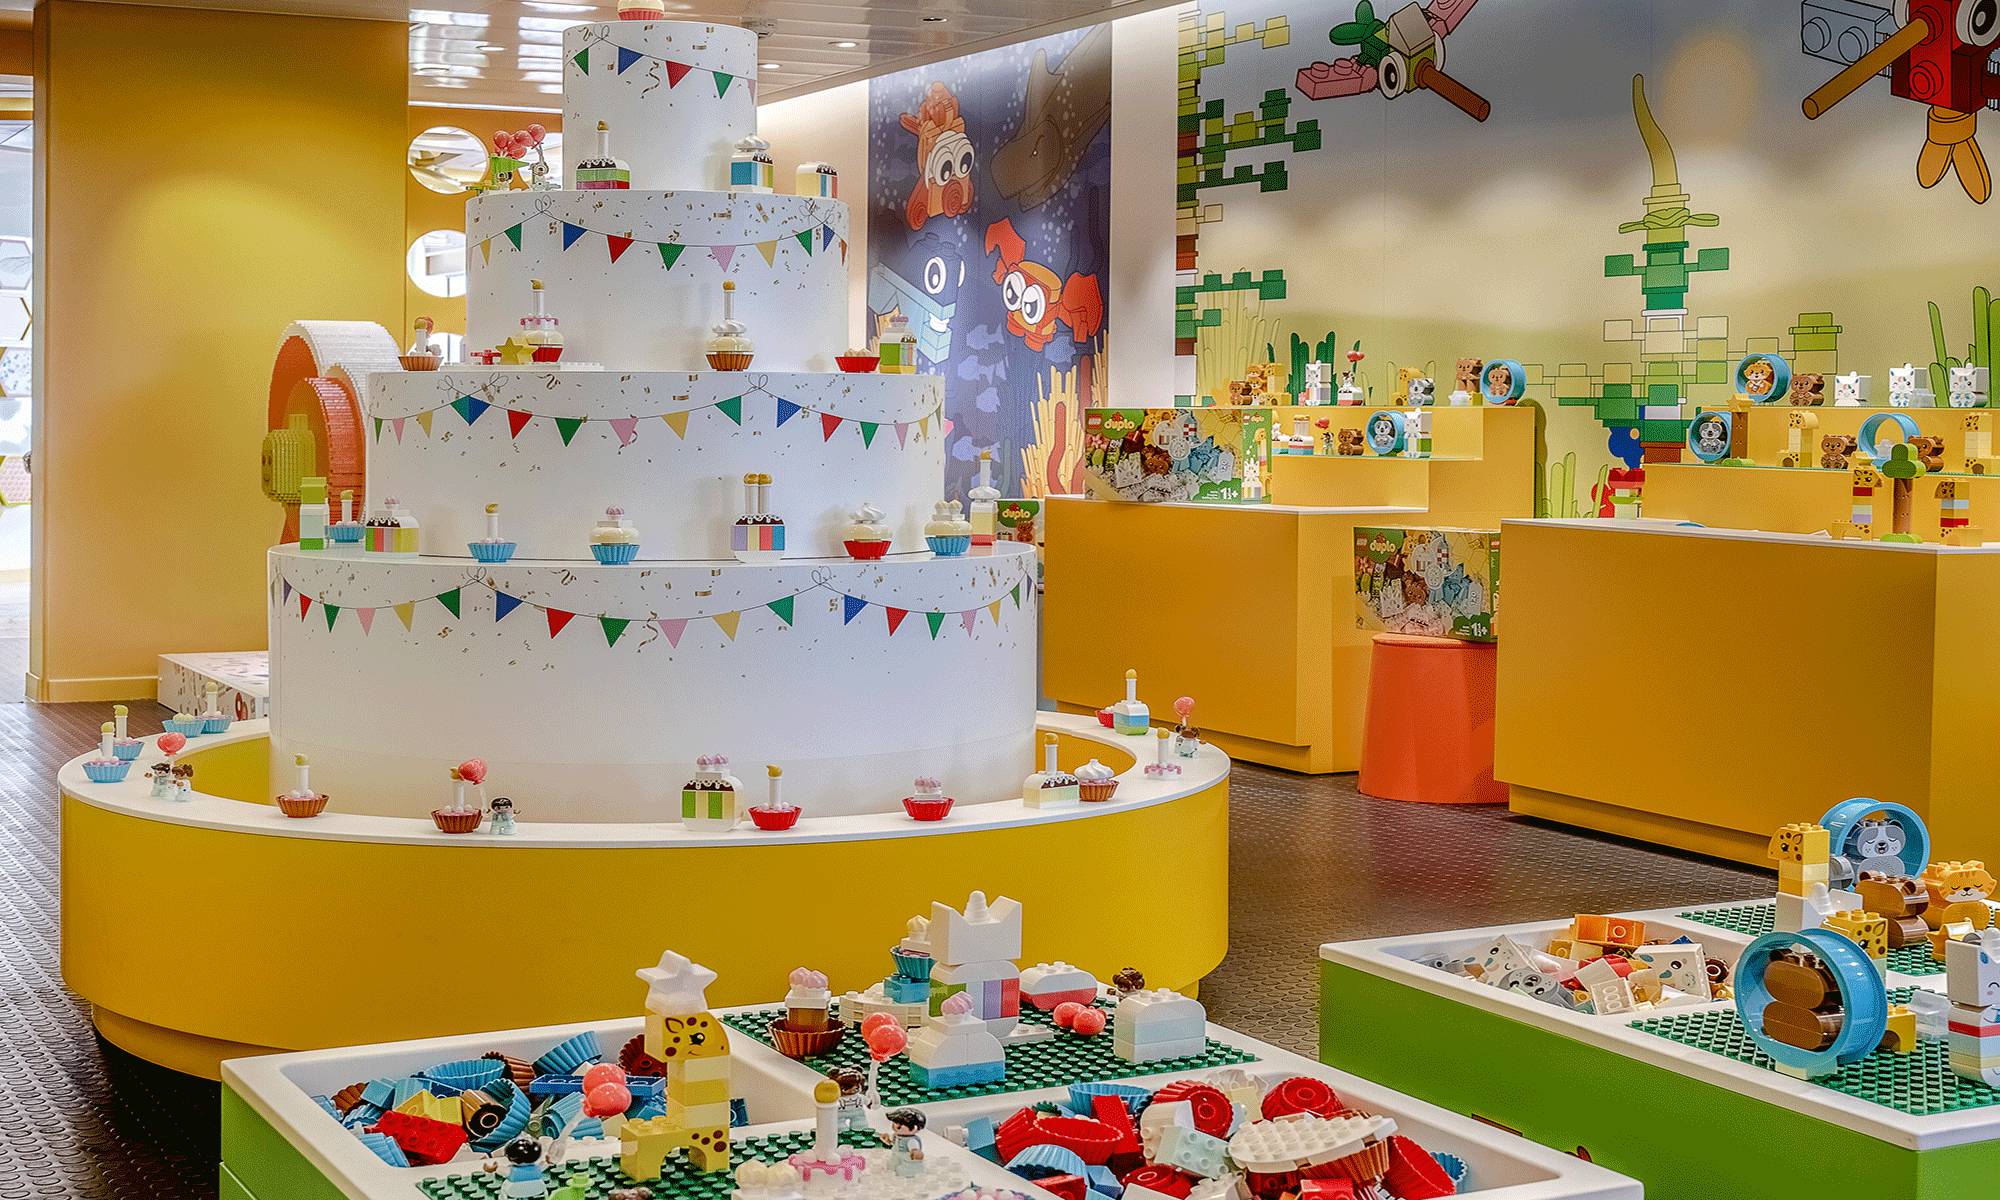 LEGO Celebration Room